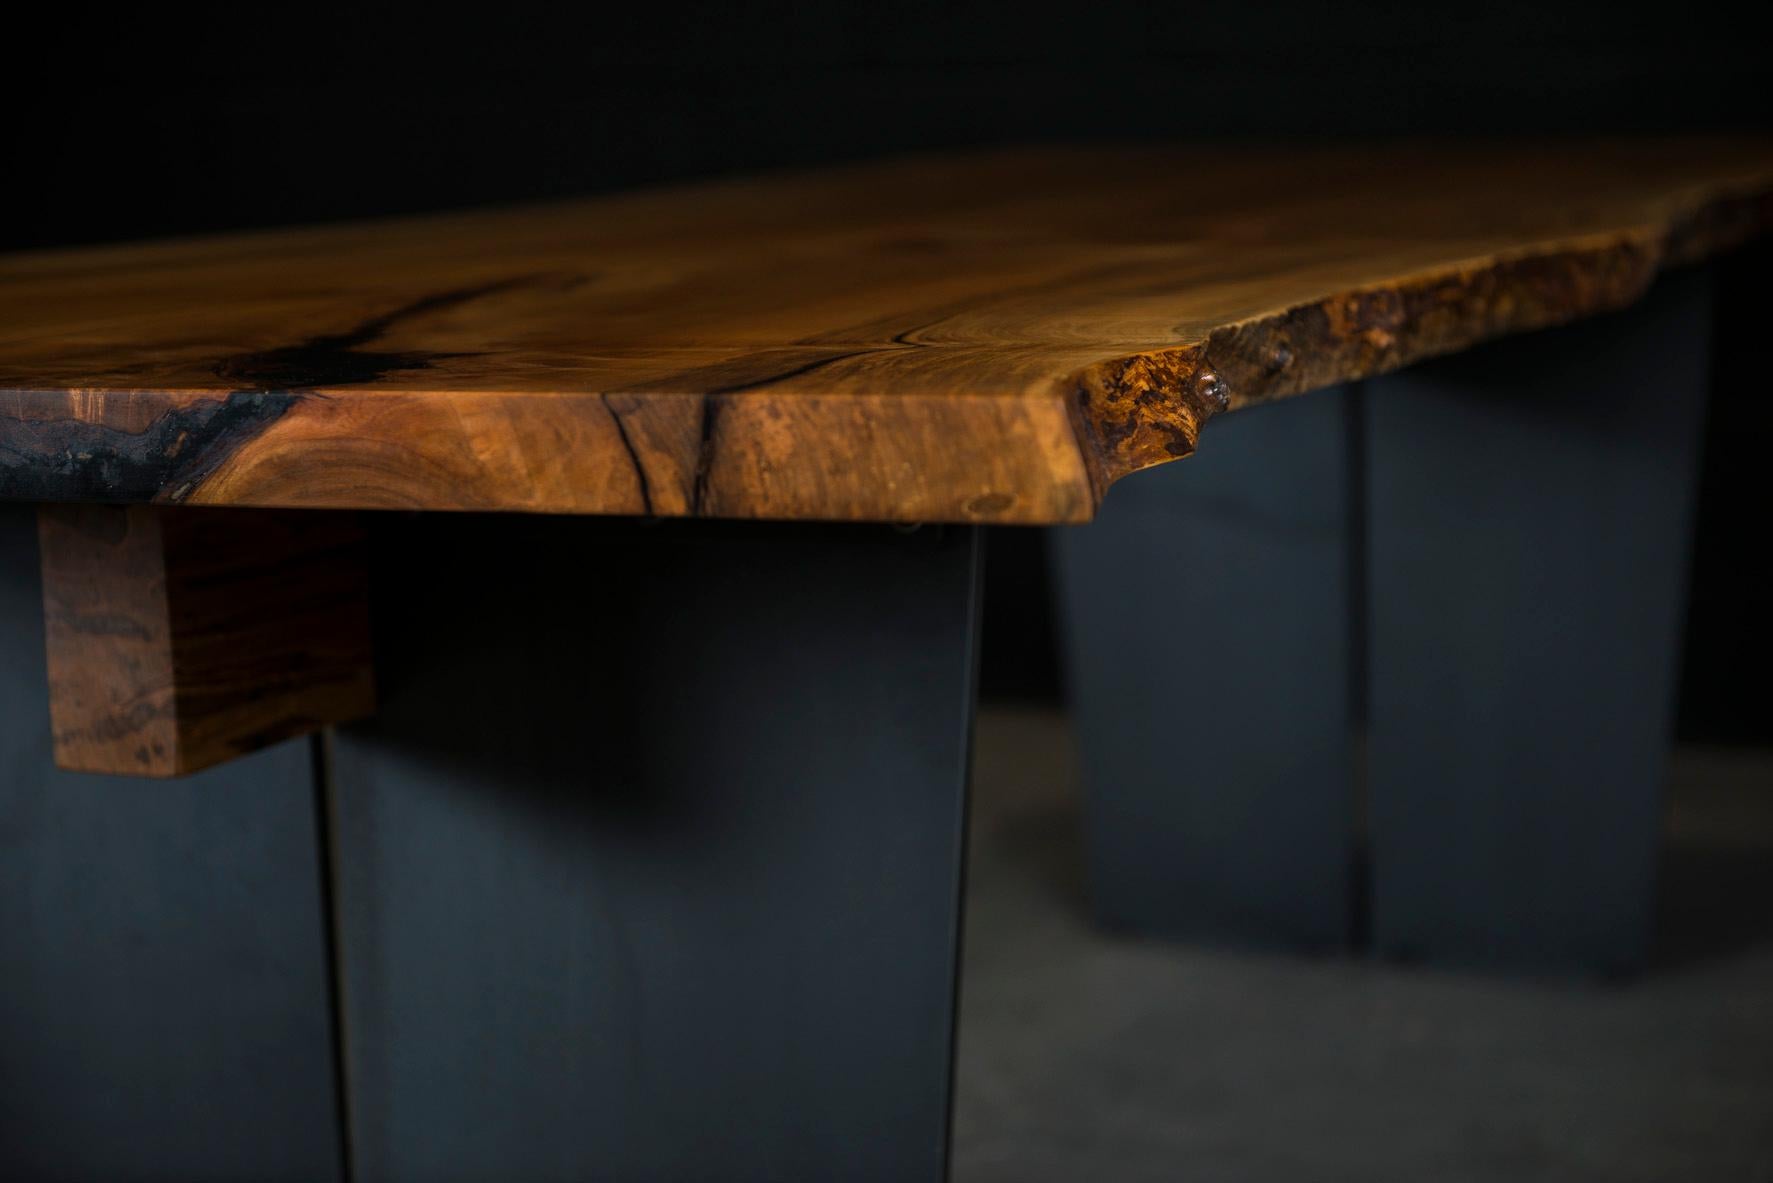 Notre table à manger Cadelon à bord vif est fabriquée à la main sur commande à partir d'une dalle d'érable argenté unique en son genre, avec une finition à l'huile et à la cire naturelles frottées à la main qui rehaussent la beauté réelle du bois et